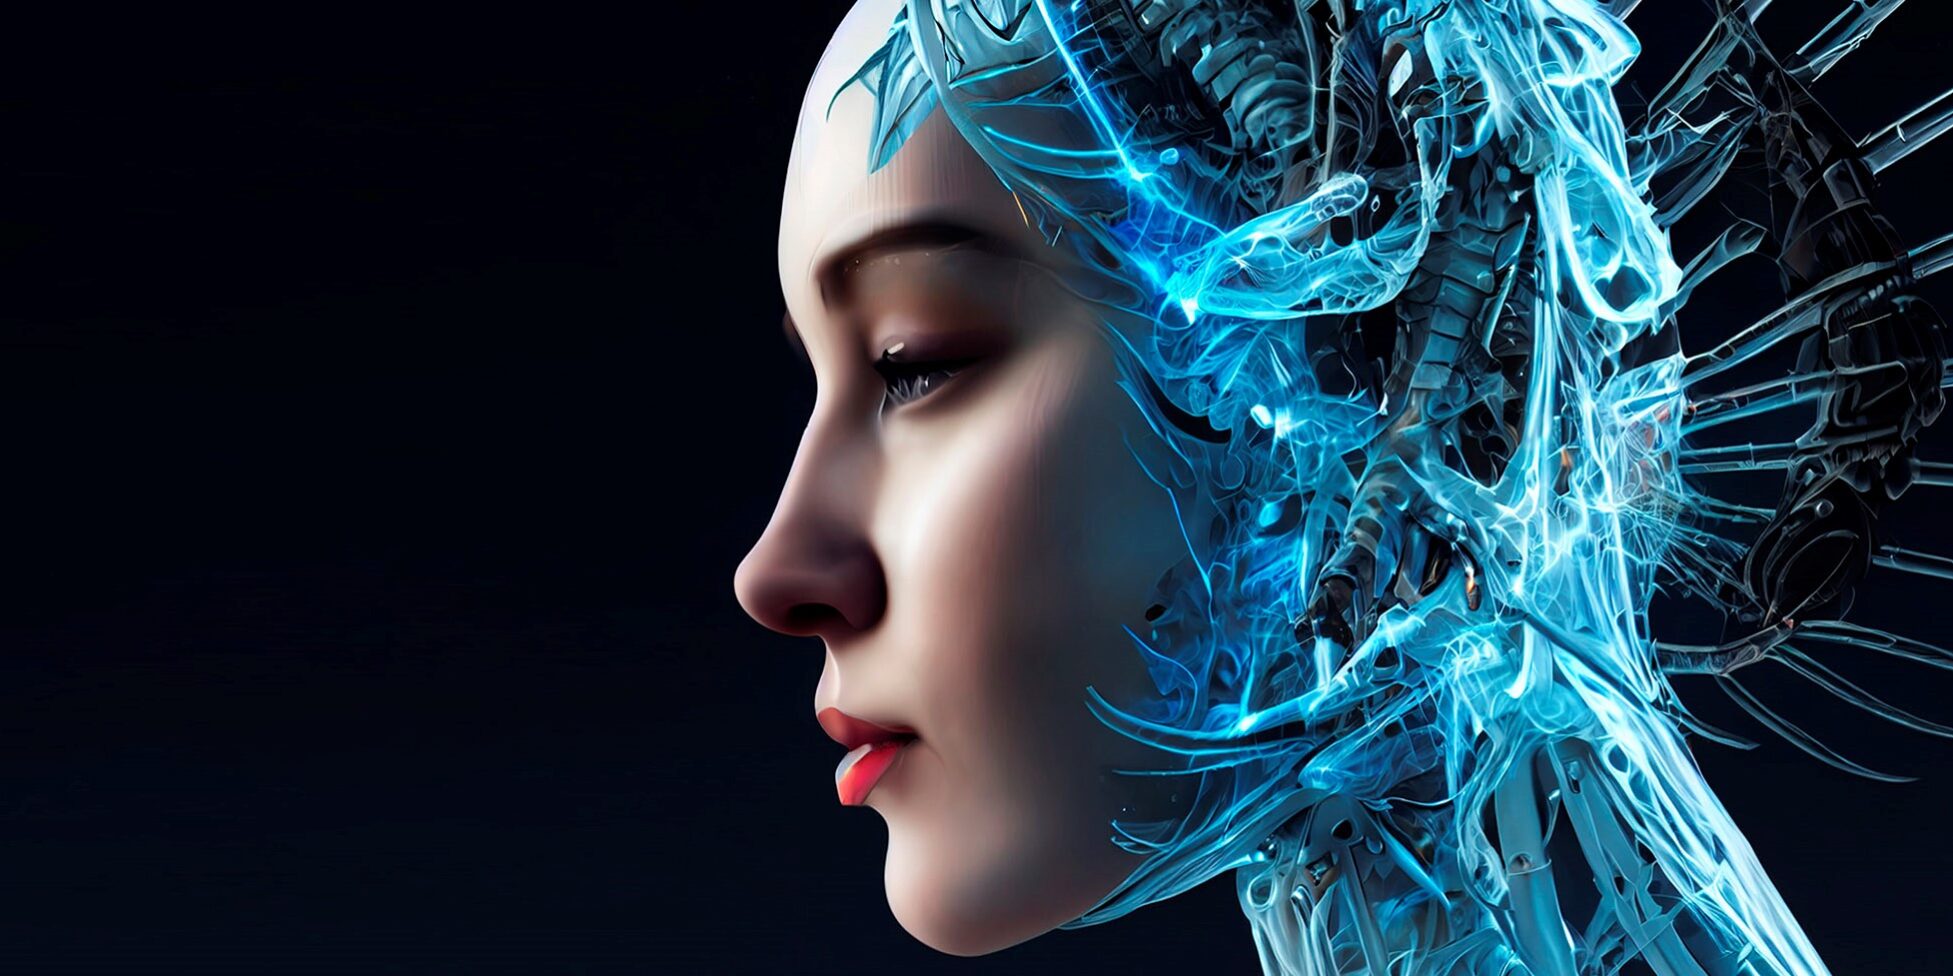 Crean mediante Inteligencia Artificial retratos que muestran cómo serían  los humanos en mil años más - Guioteca